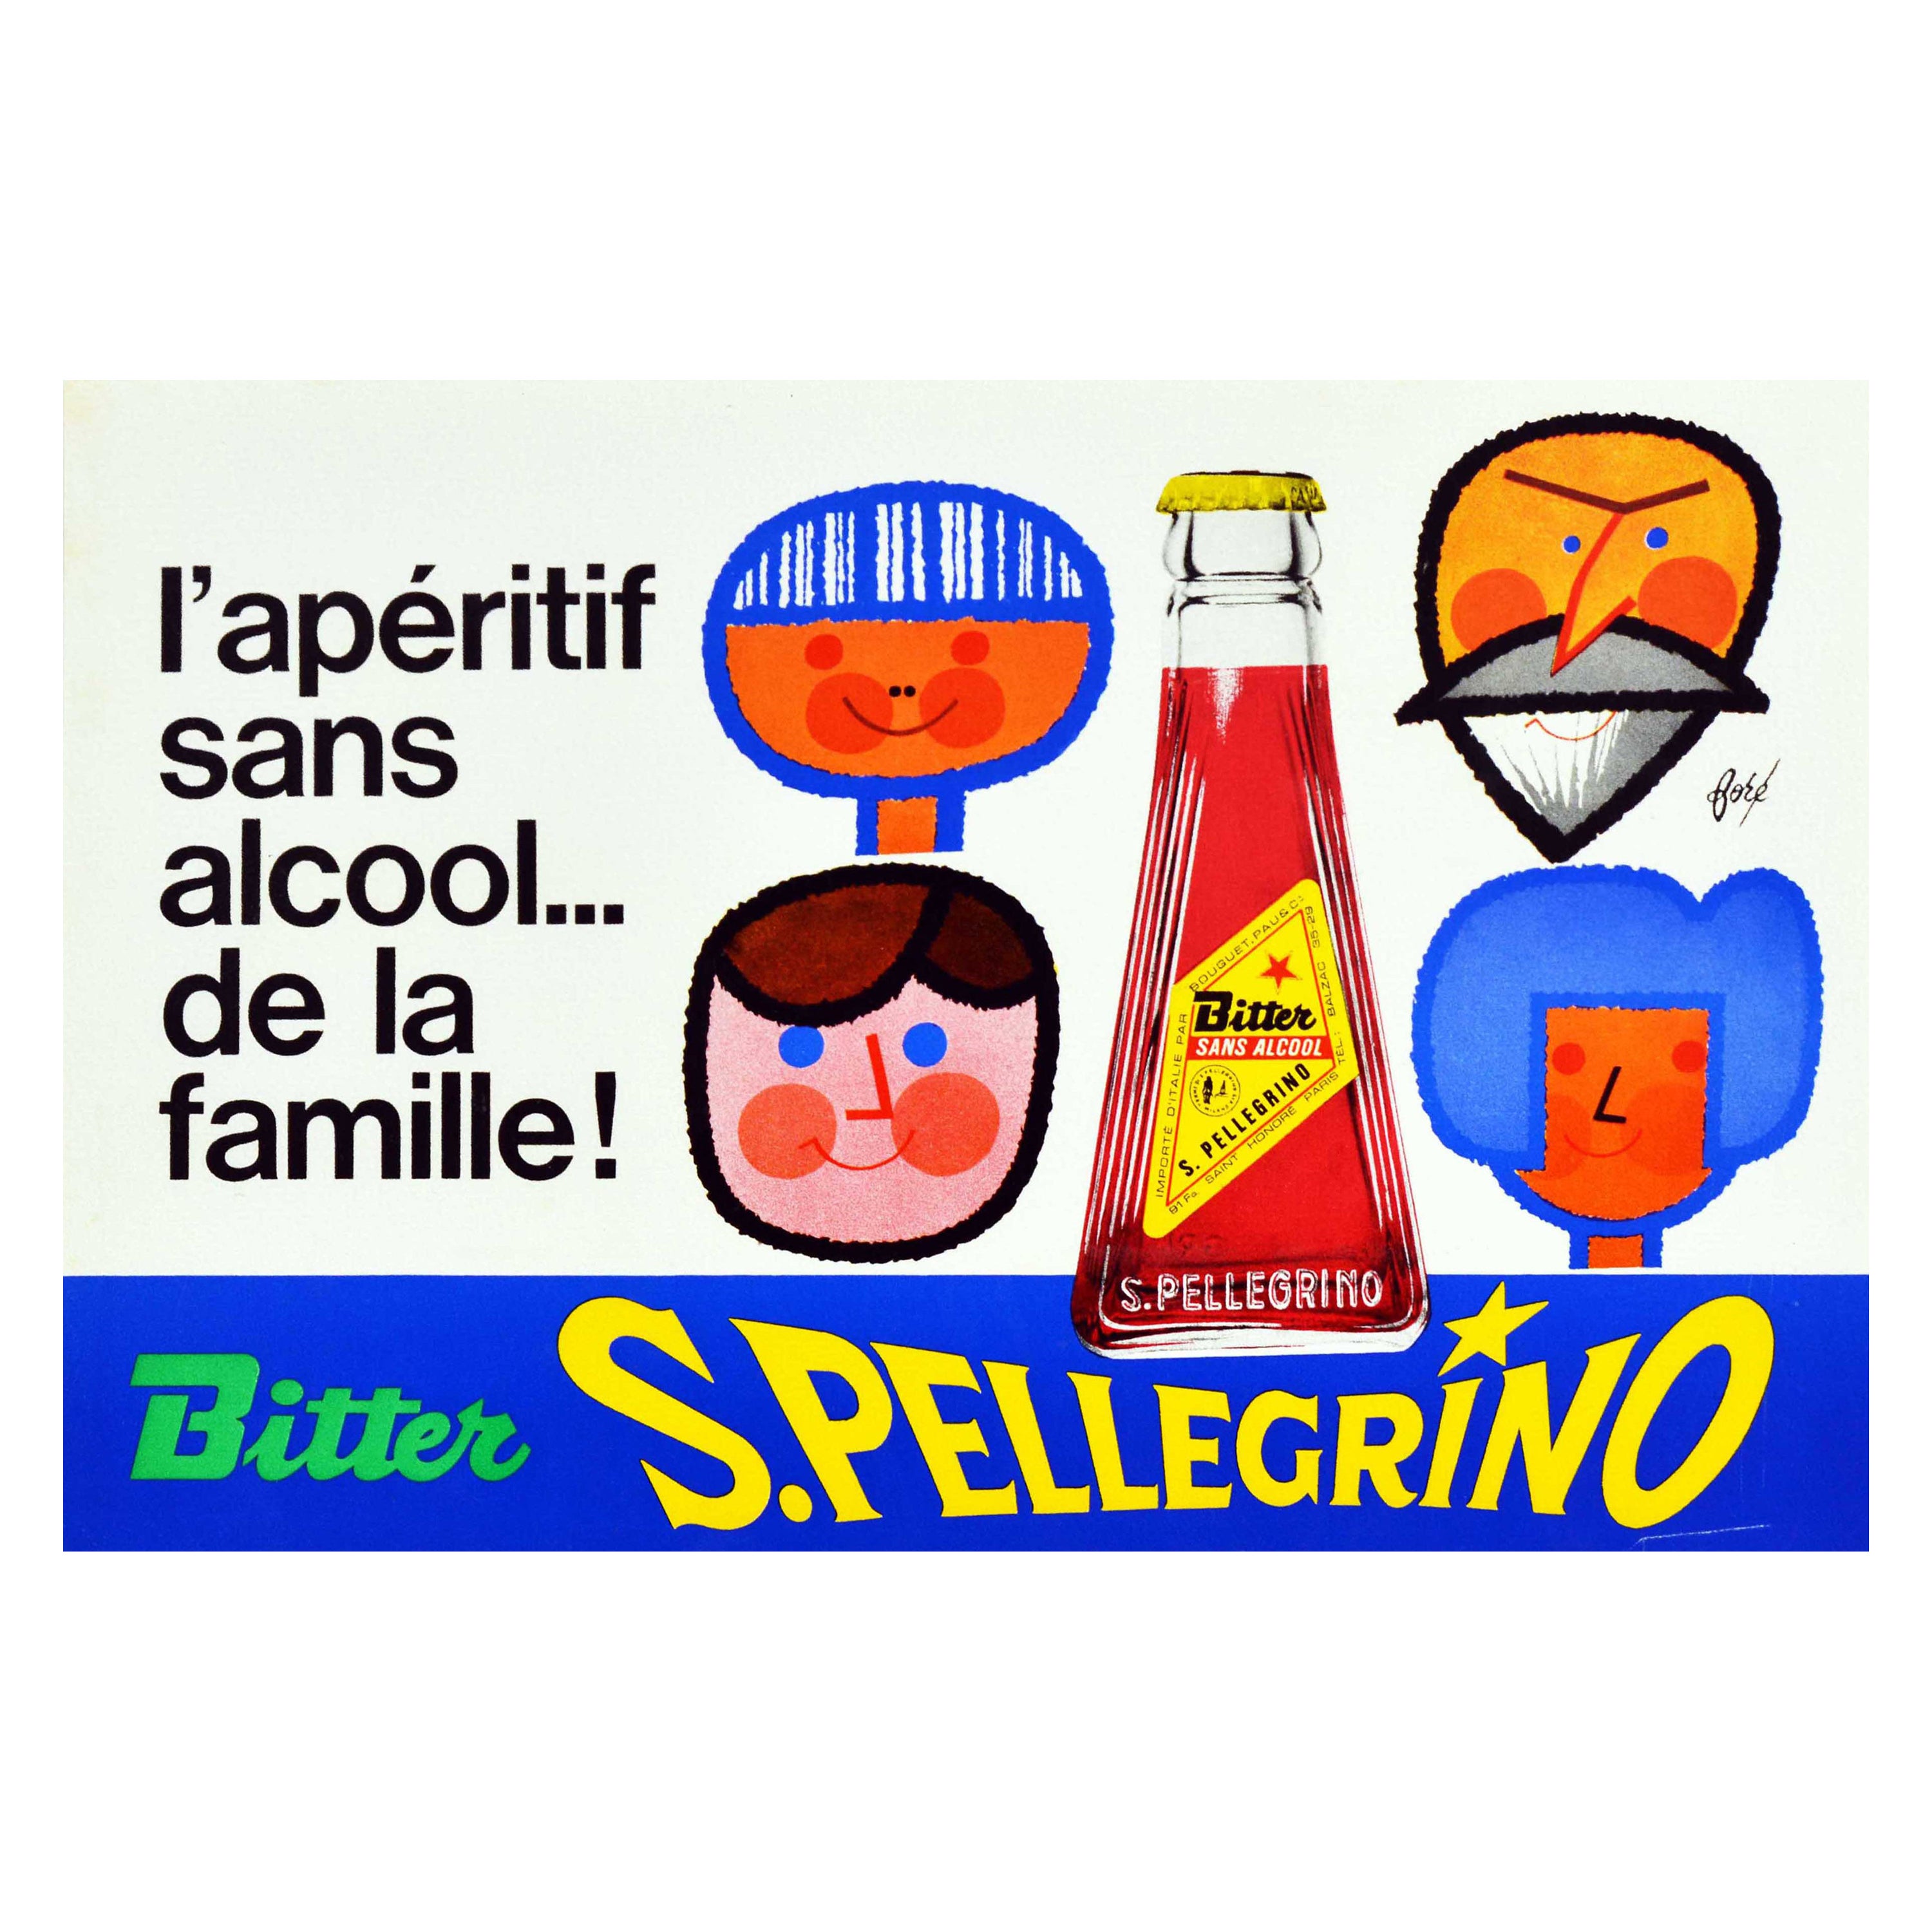 Affiche rétro originale de San Pellegrino Bitter Alcohol Free Family Aperitif